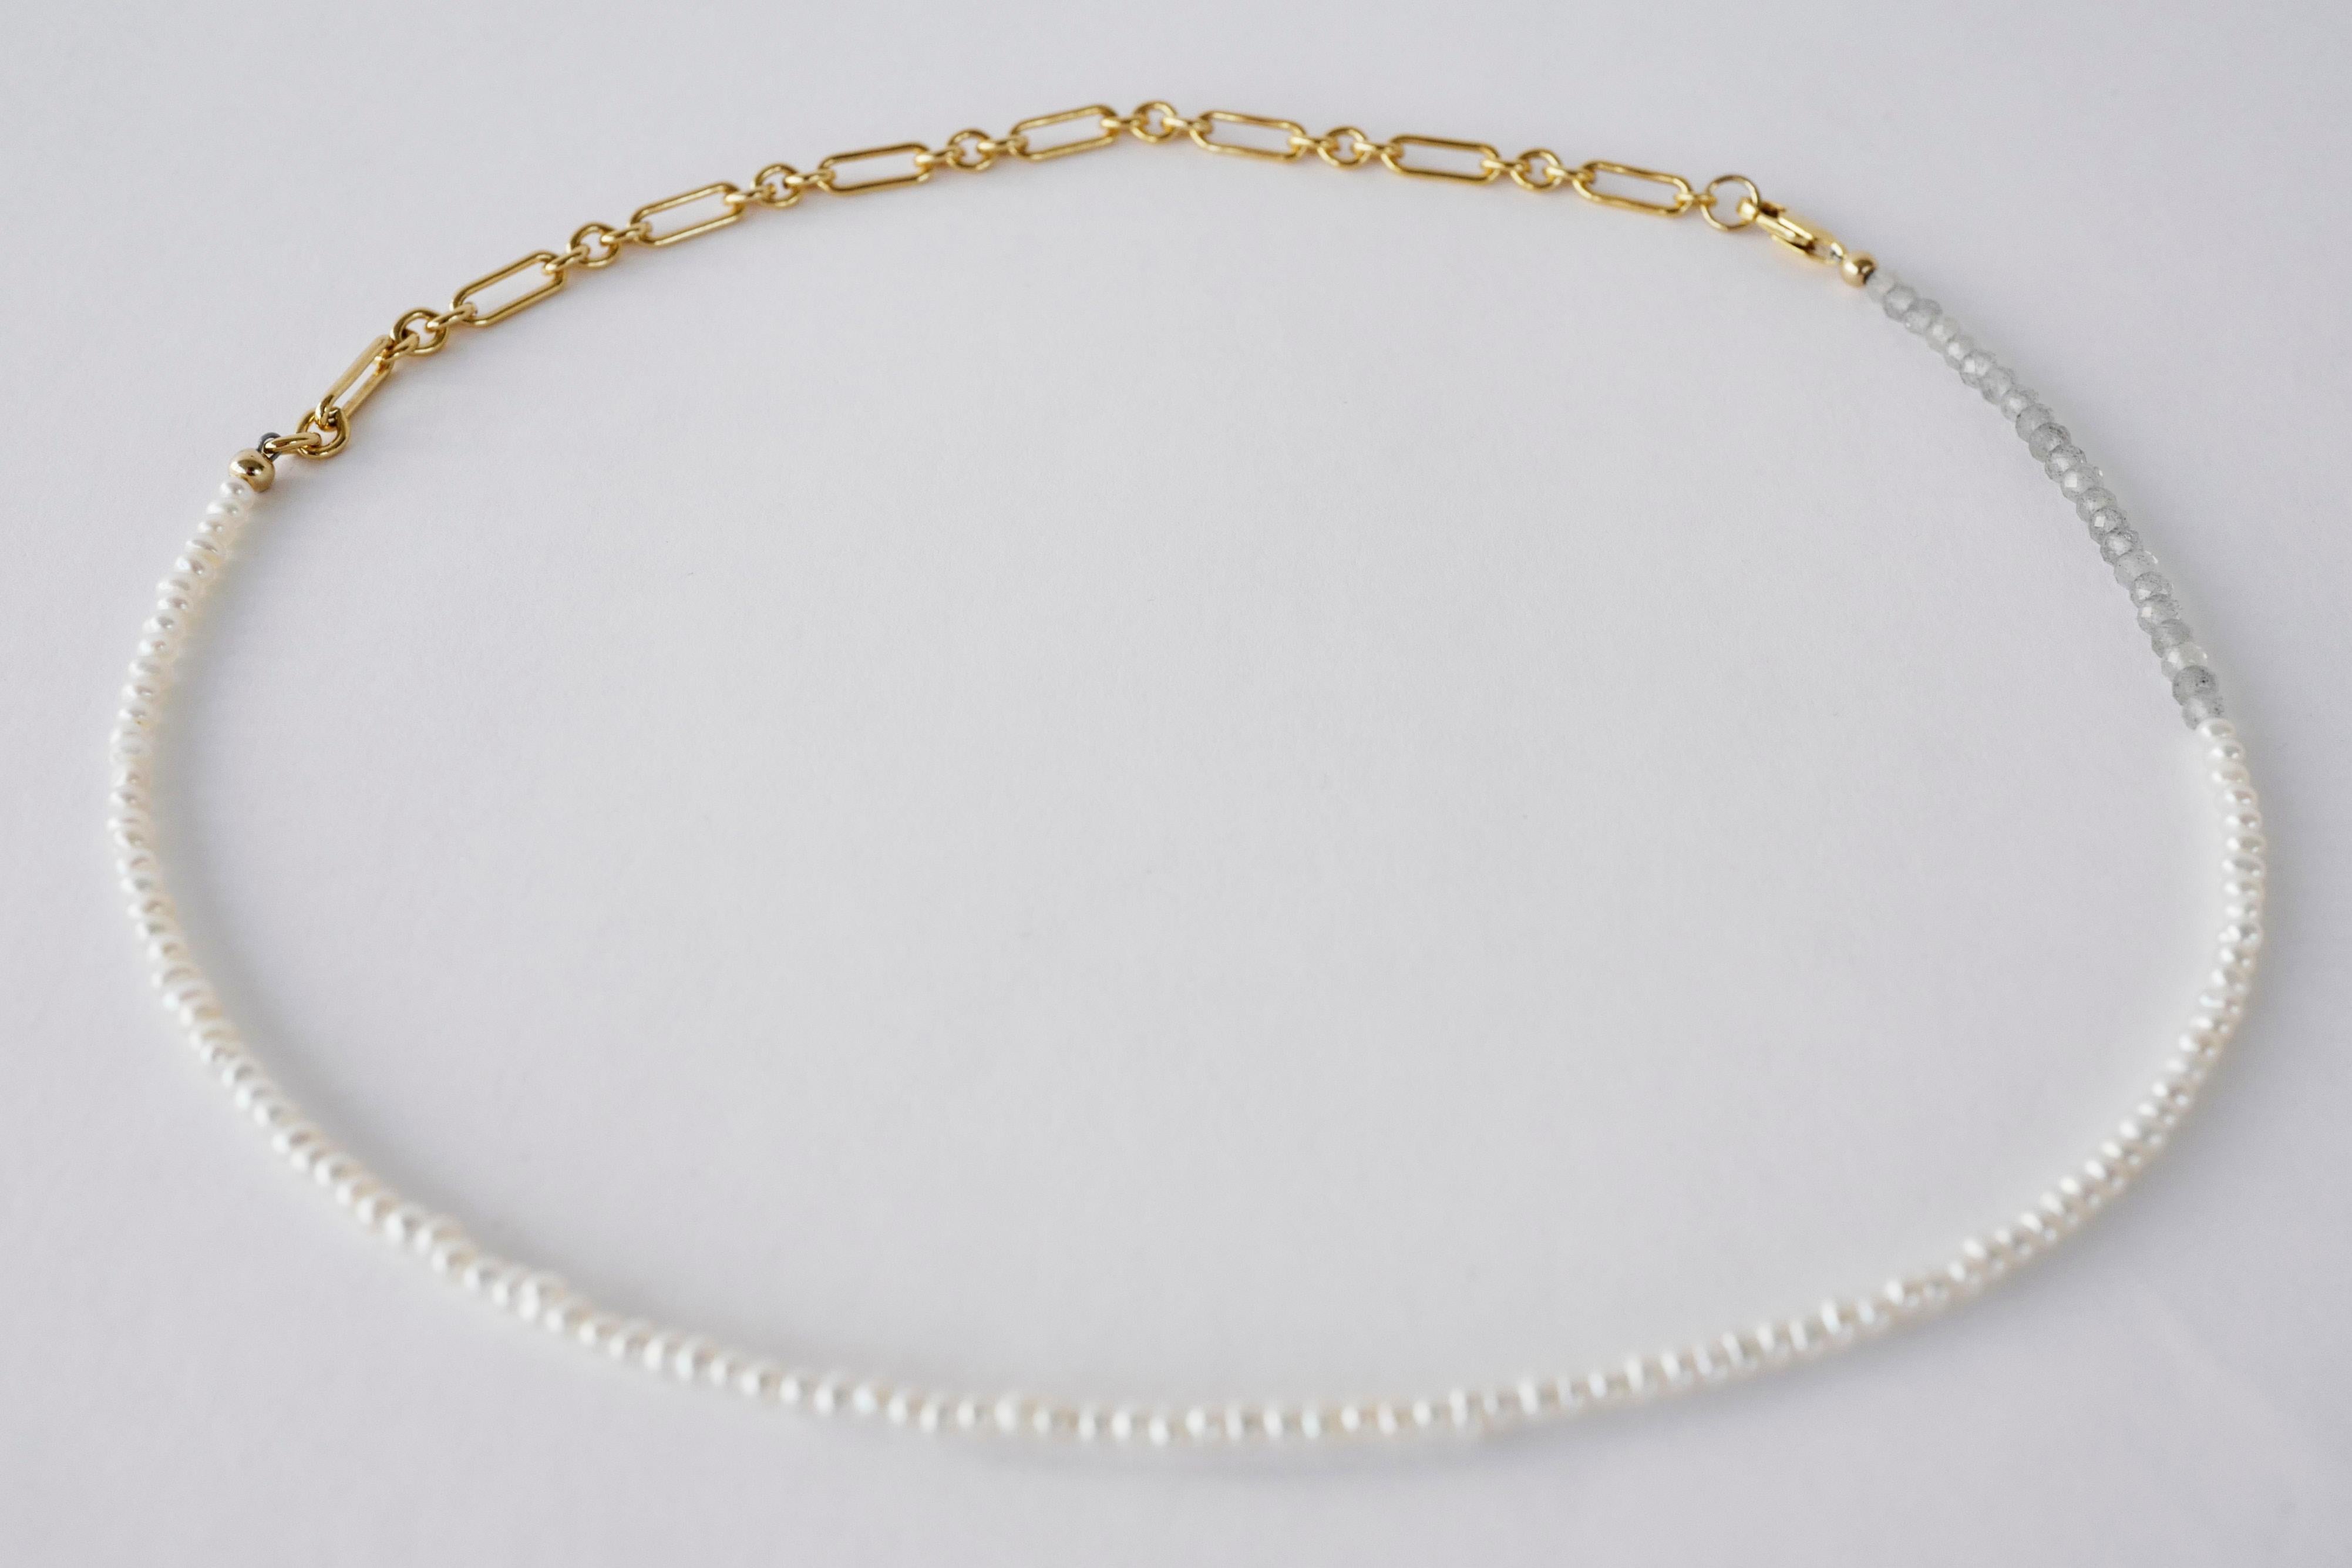 Weiße Perle Grauer Labradorit Goldgefüllte Kette Perlenhalsband J DAUPHIN

